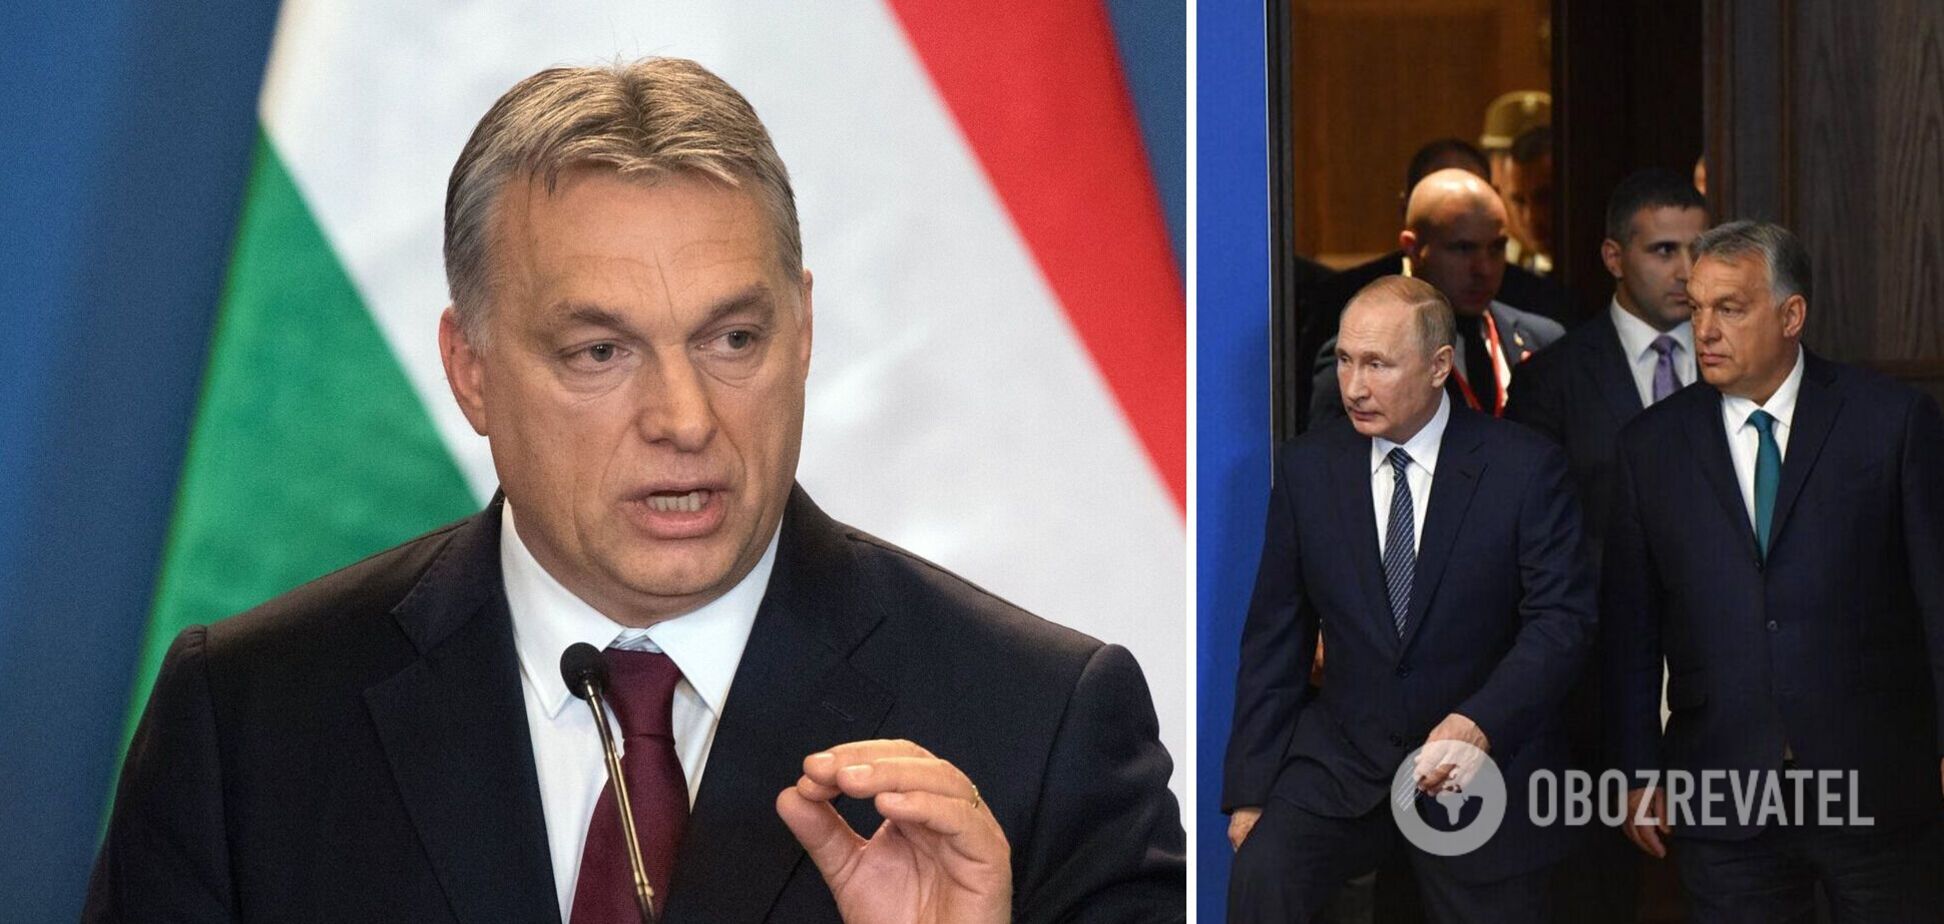 Орбана называют другом Путина за его многолетние связи с Кремлем